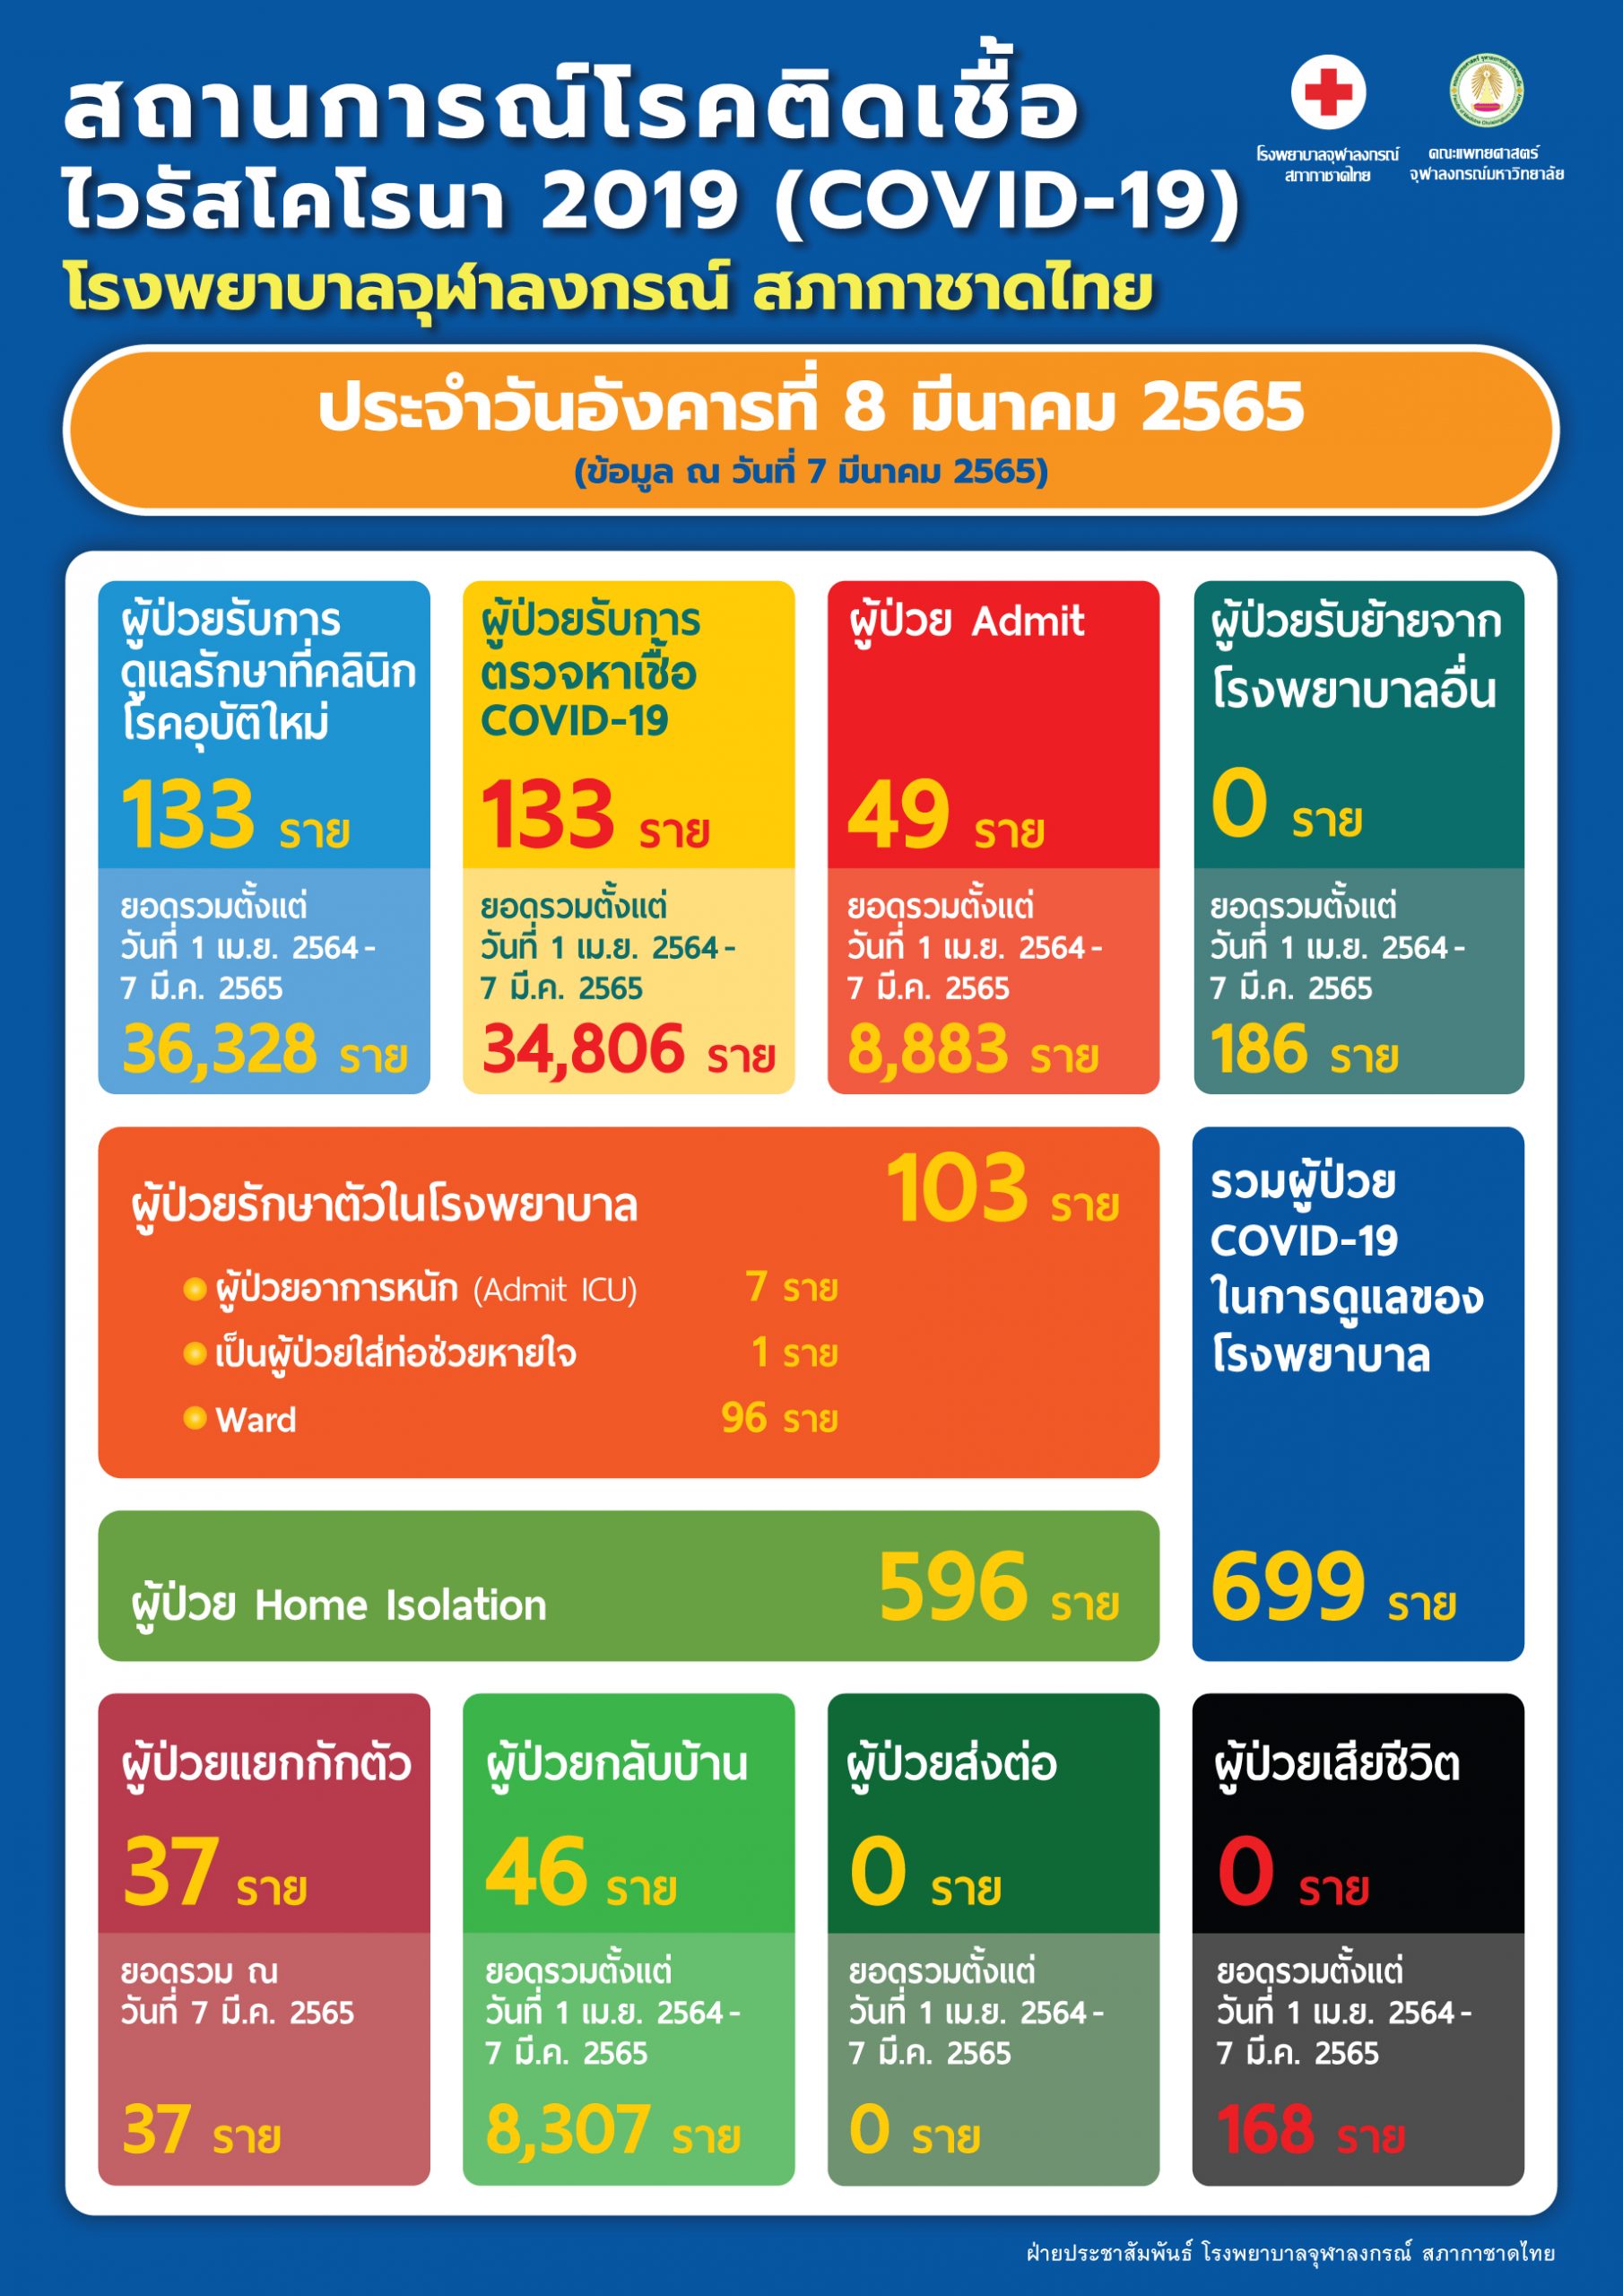 สถานการณ์โรคติดเชื้อไวรัสโคโรนา 2019 (COVID-19) โรงพยาบาลจุฬาลงกรณ์ สภากาชาดไทย ประจำวันอังคารที่ 8 มีนาคม 2565